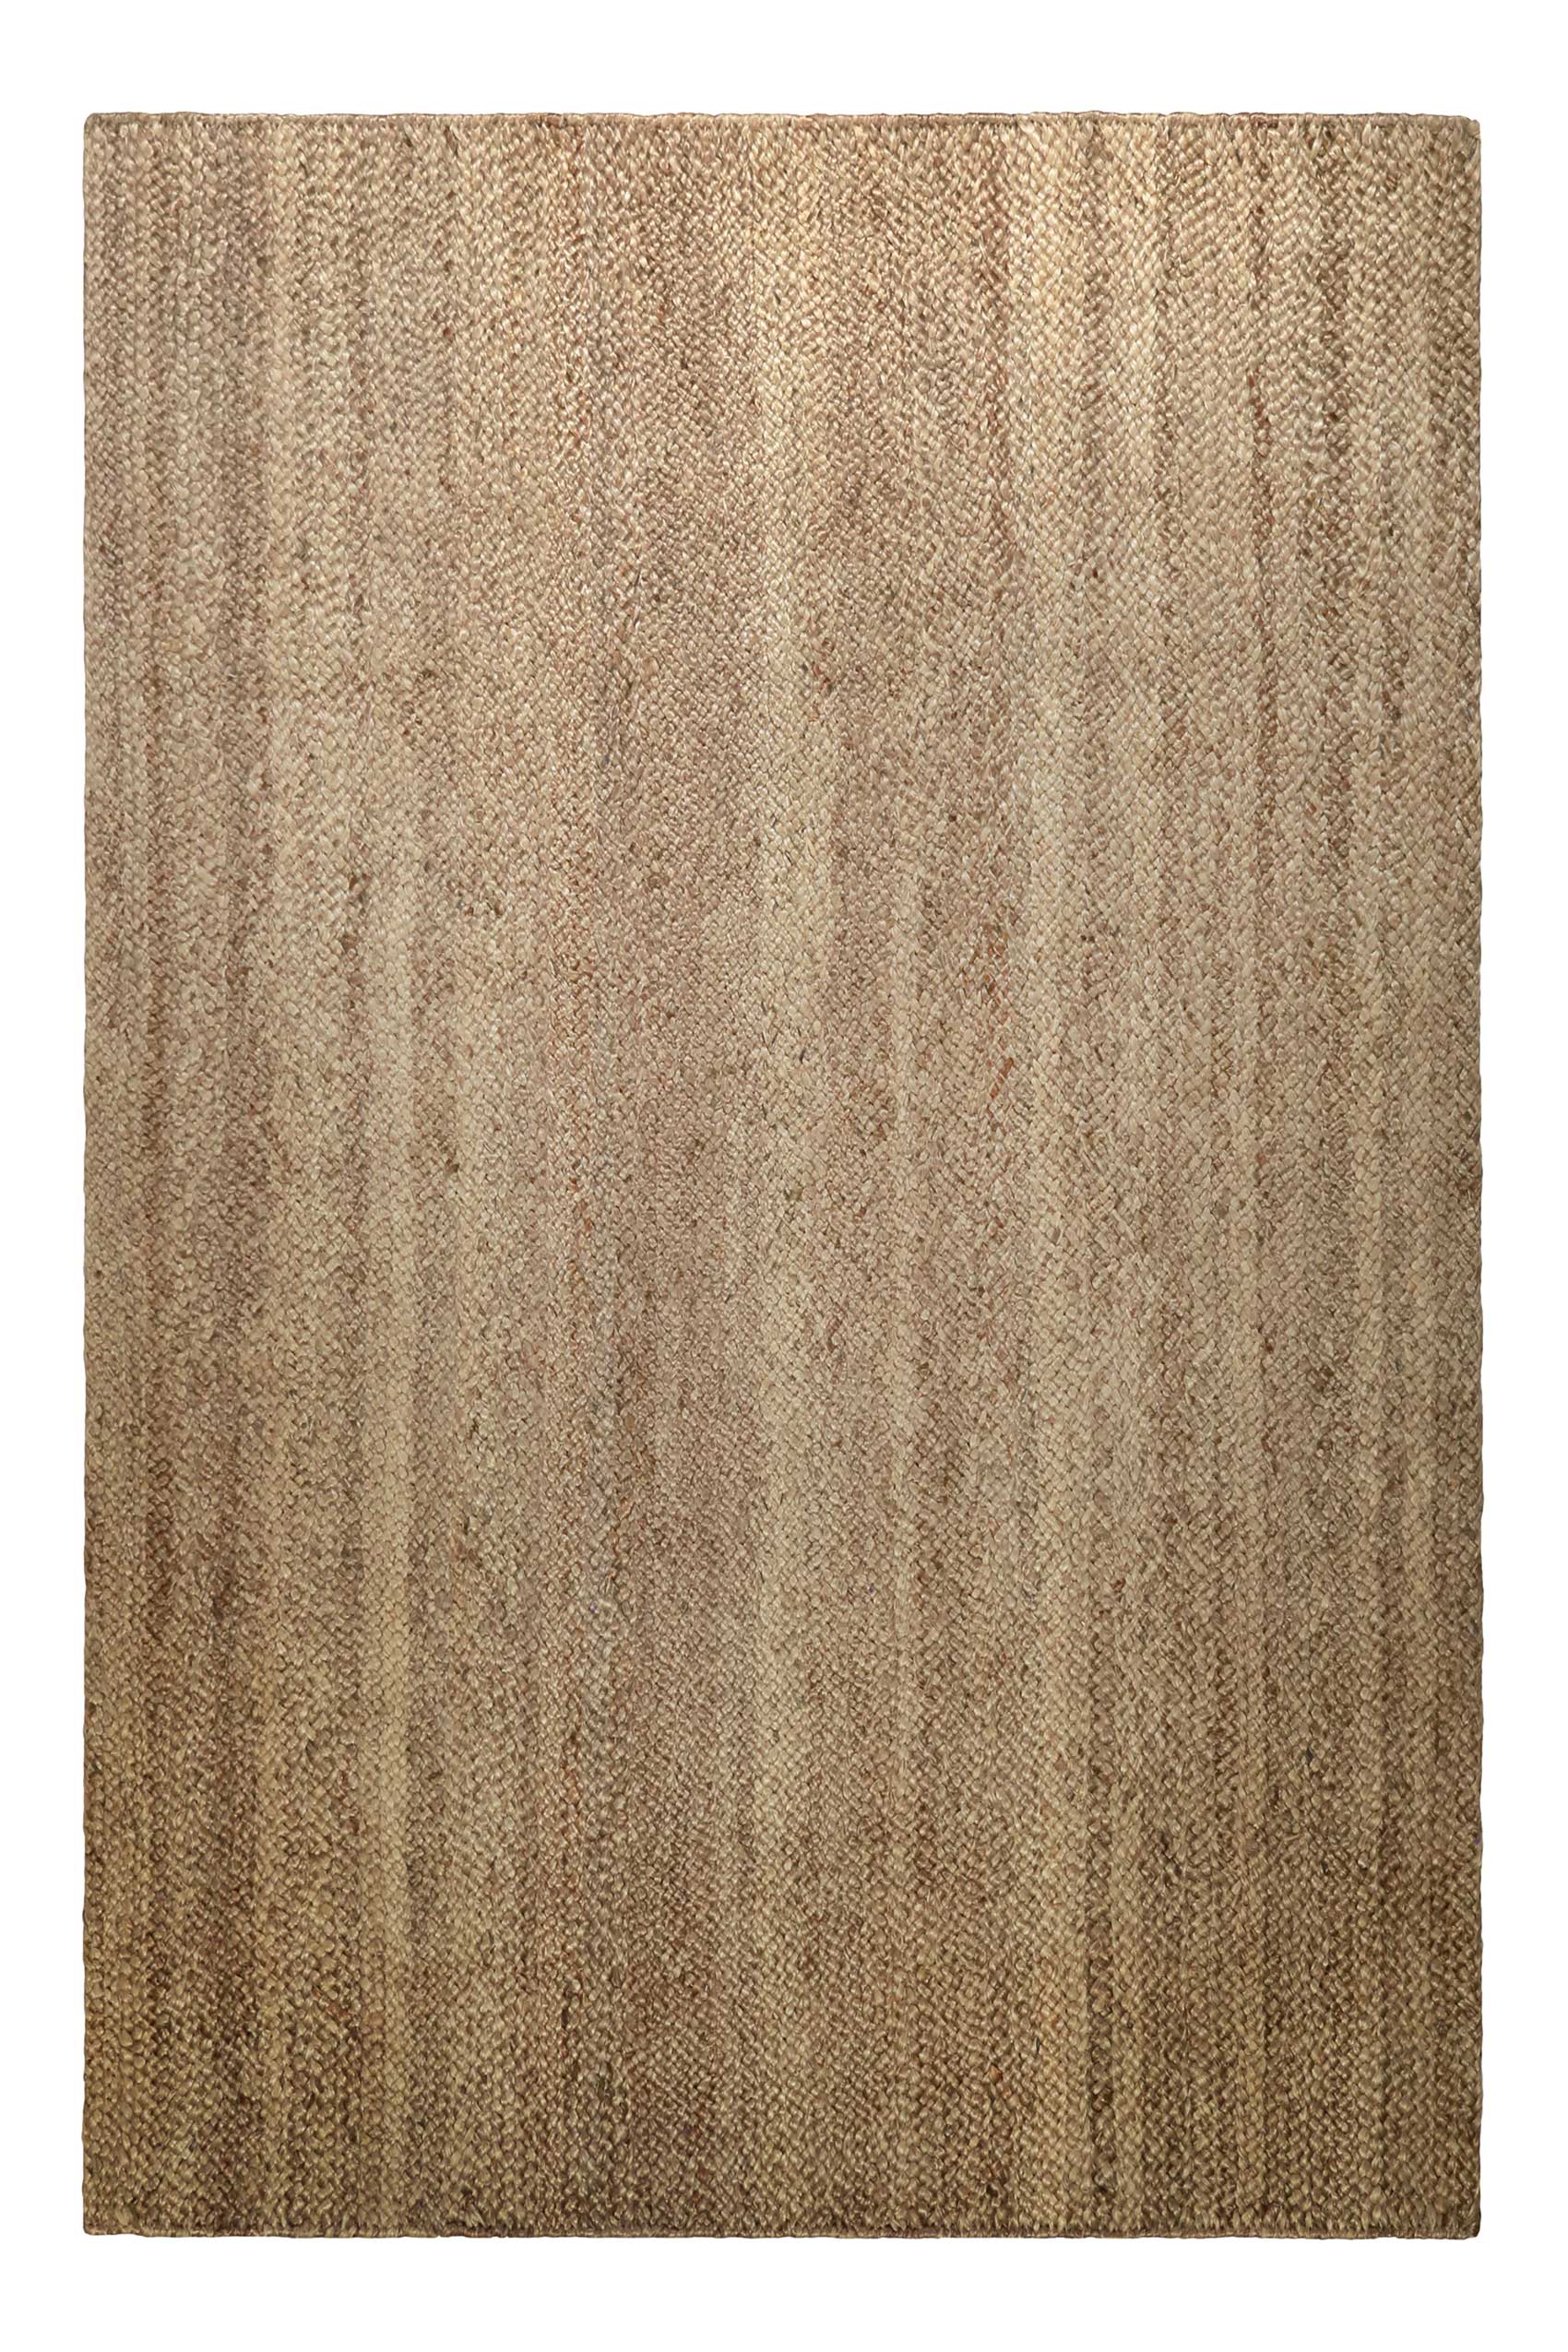 Nachhaltiger Teppich Natur Braun aus Jute » Camari « Green Looop - Ansicht 1